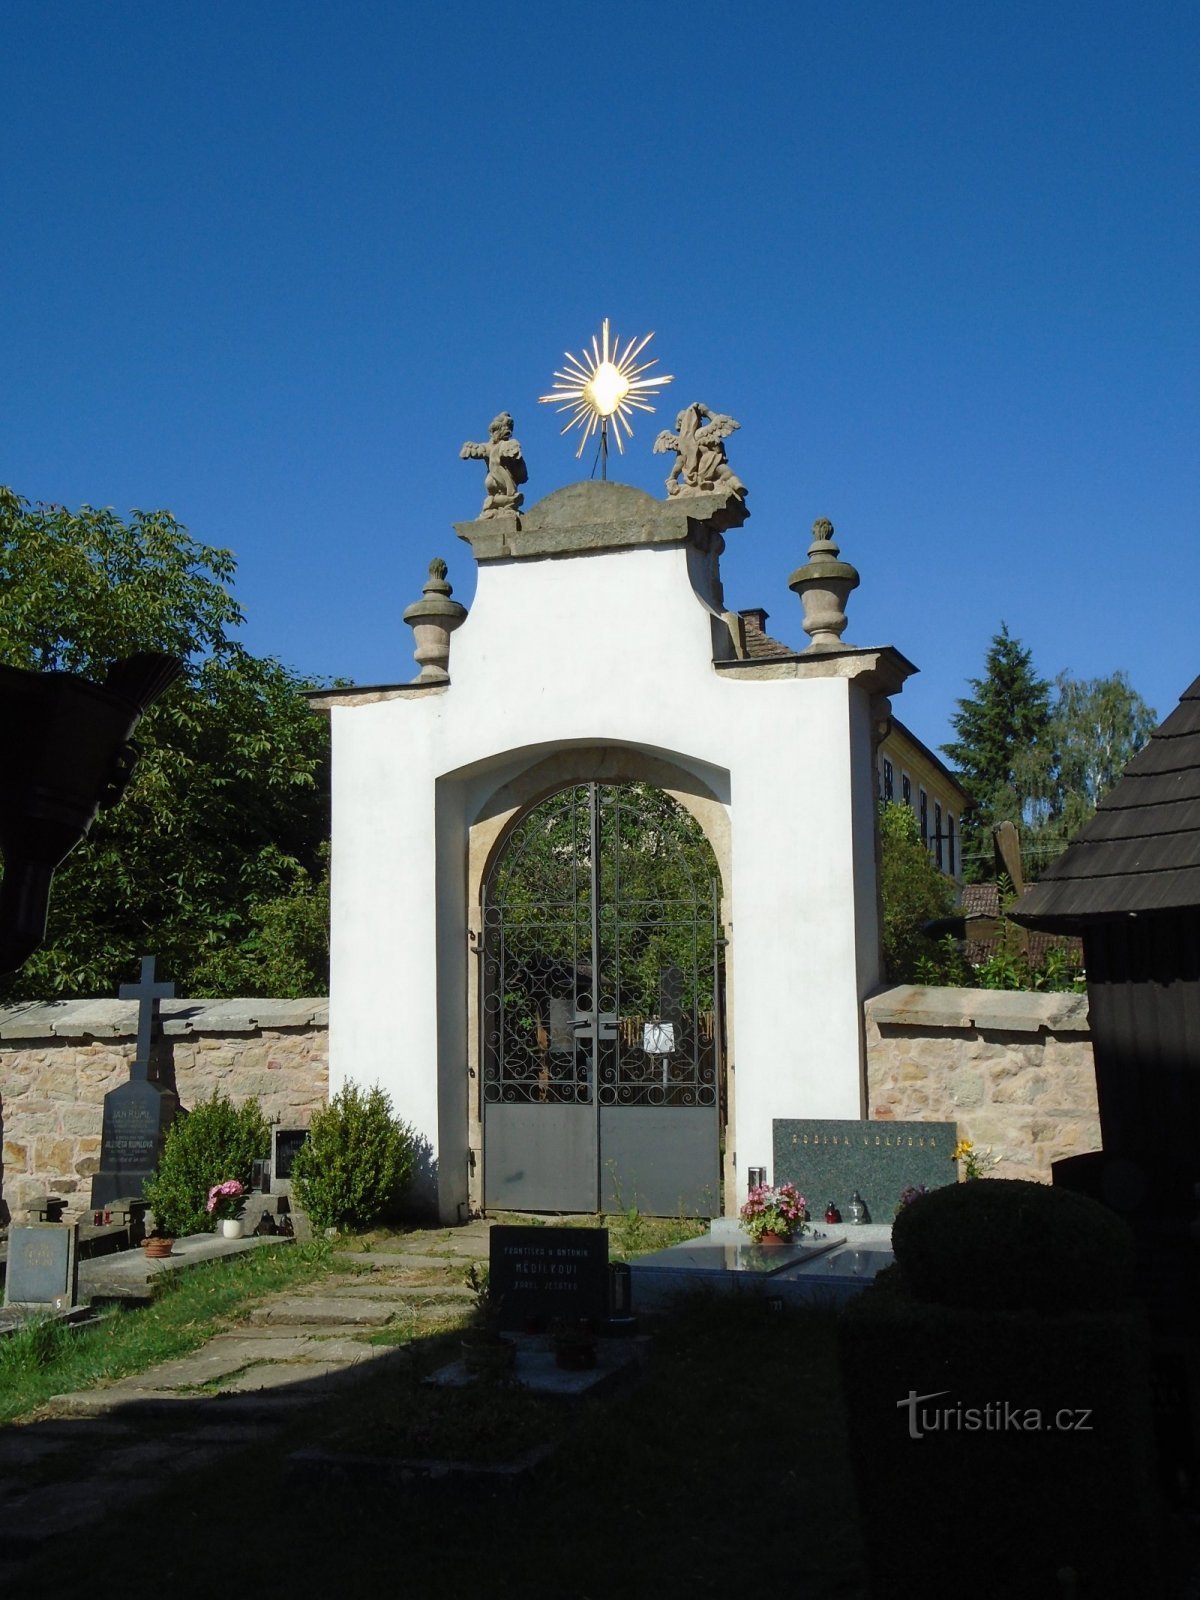 Portão do cemitério (Chotěborky, 3.7.2018 de julho de XNUMX)